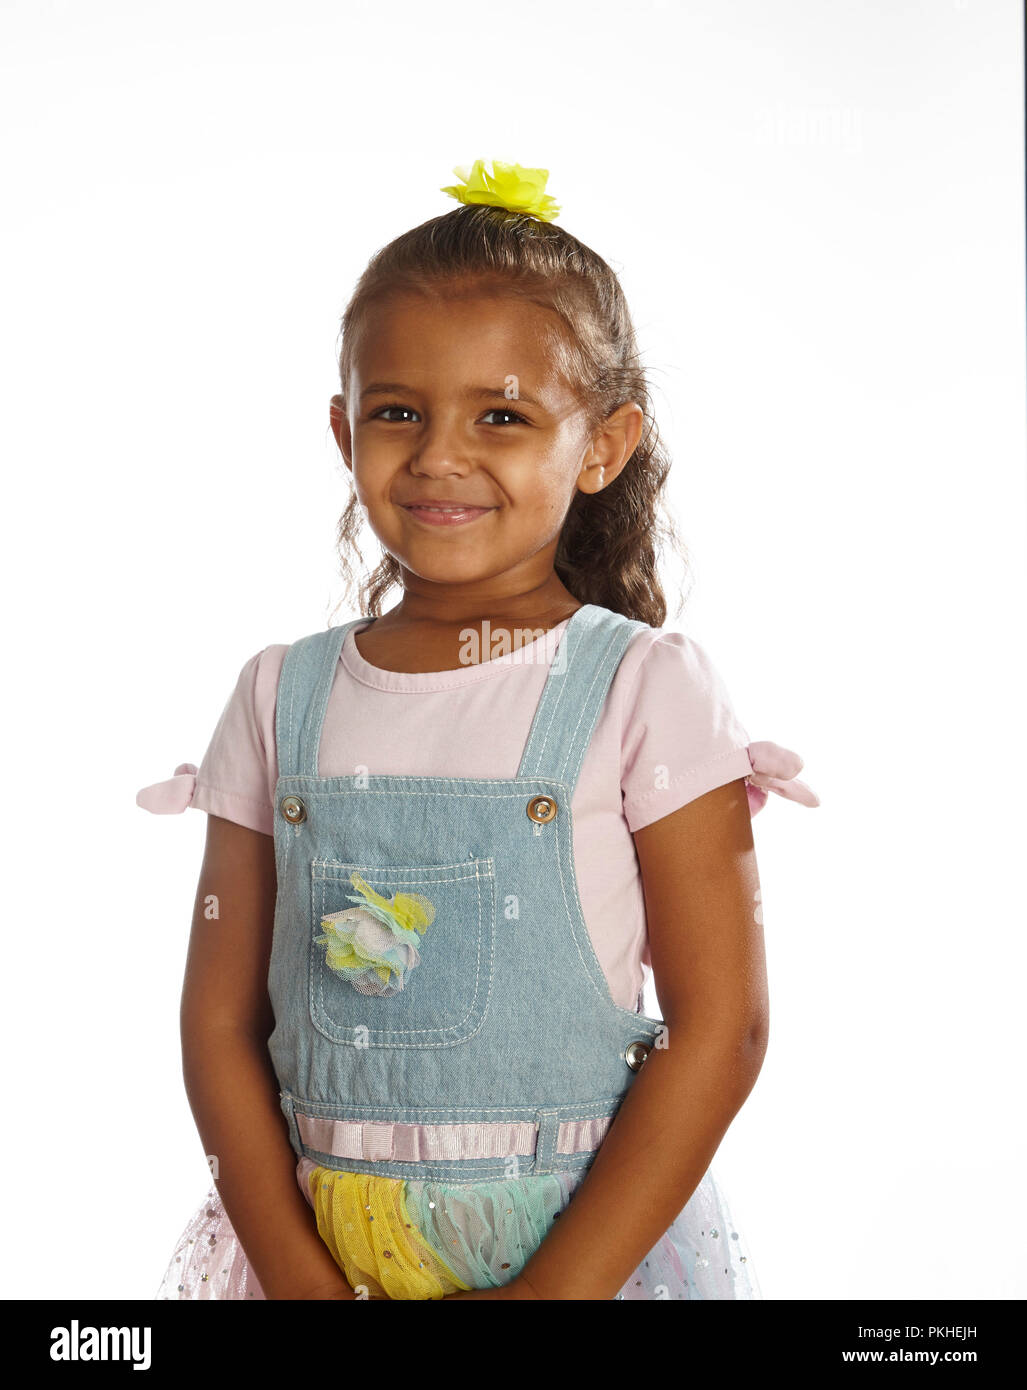 little girl in overalls Stock Photo